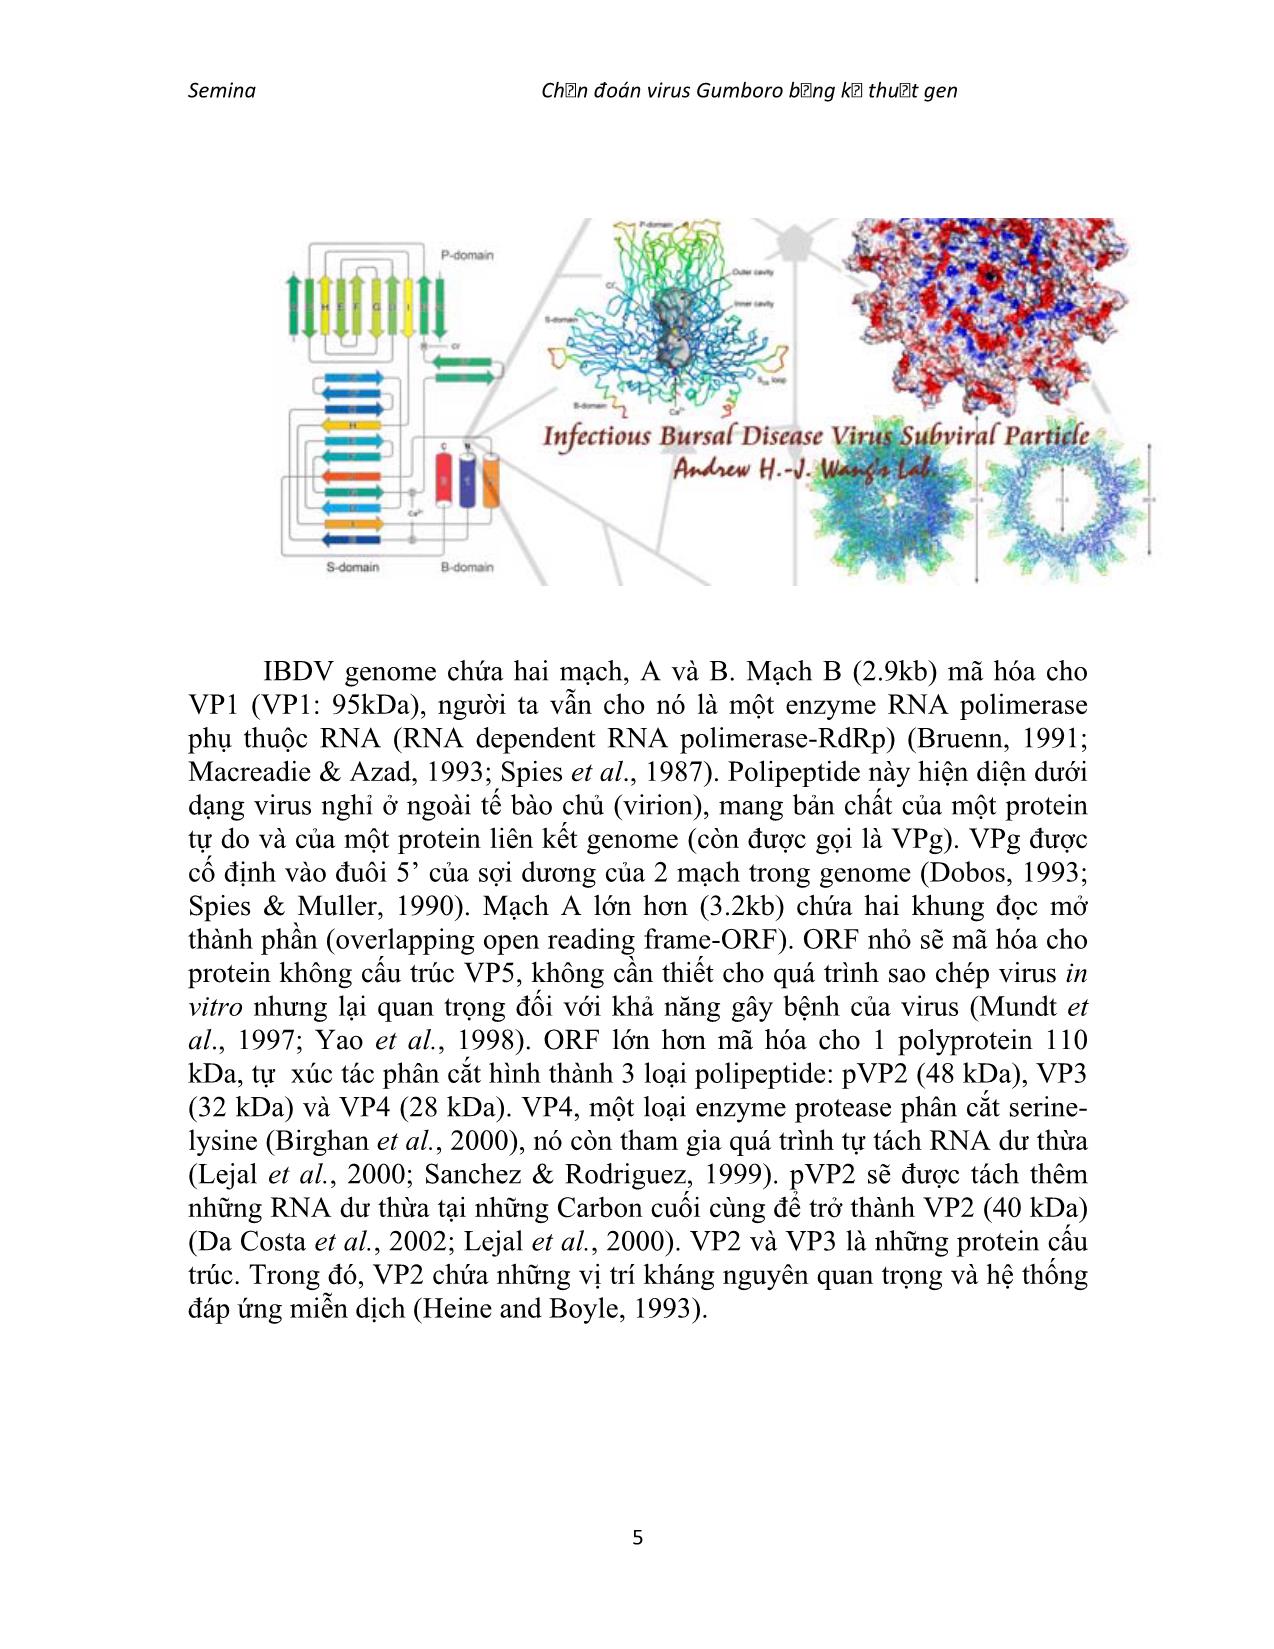 Đề tài Chẩn đoán virus gumboro (infectiuos bursal disease) bằng kỹ thuật gen trang 5